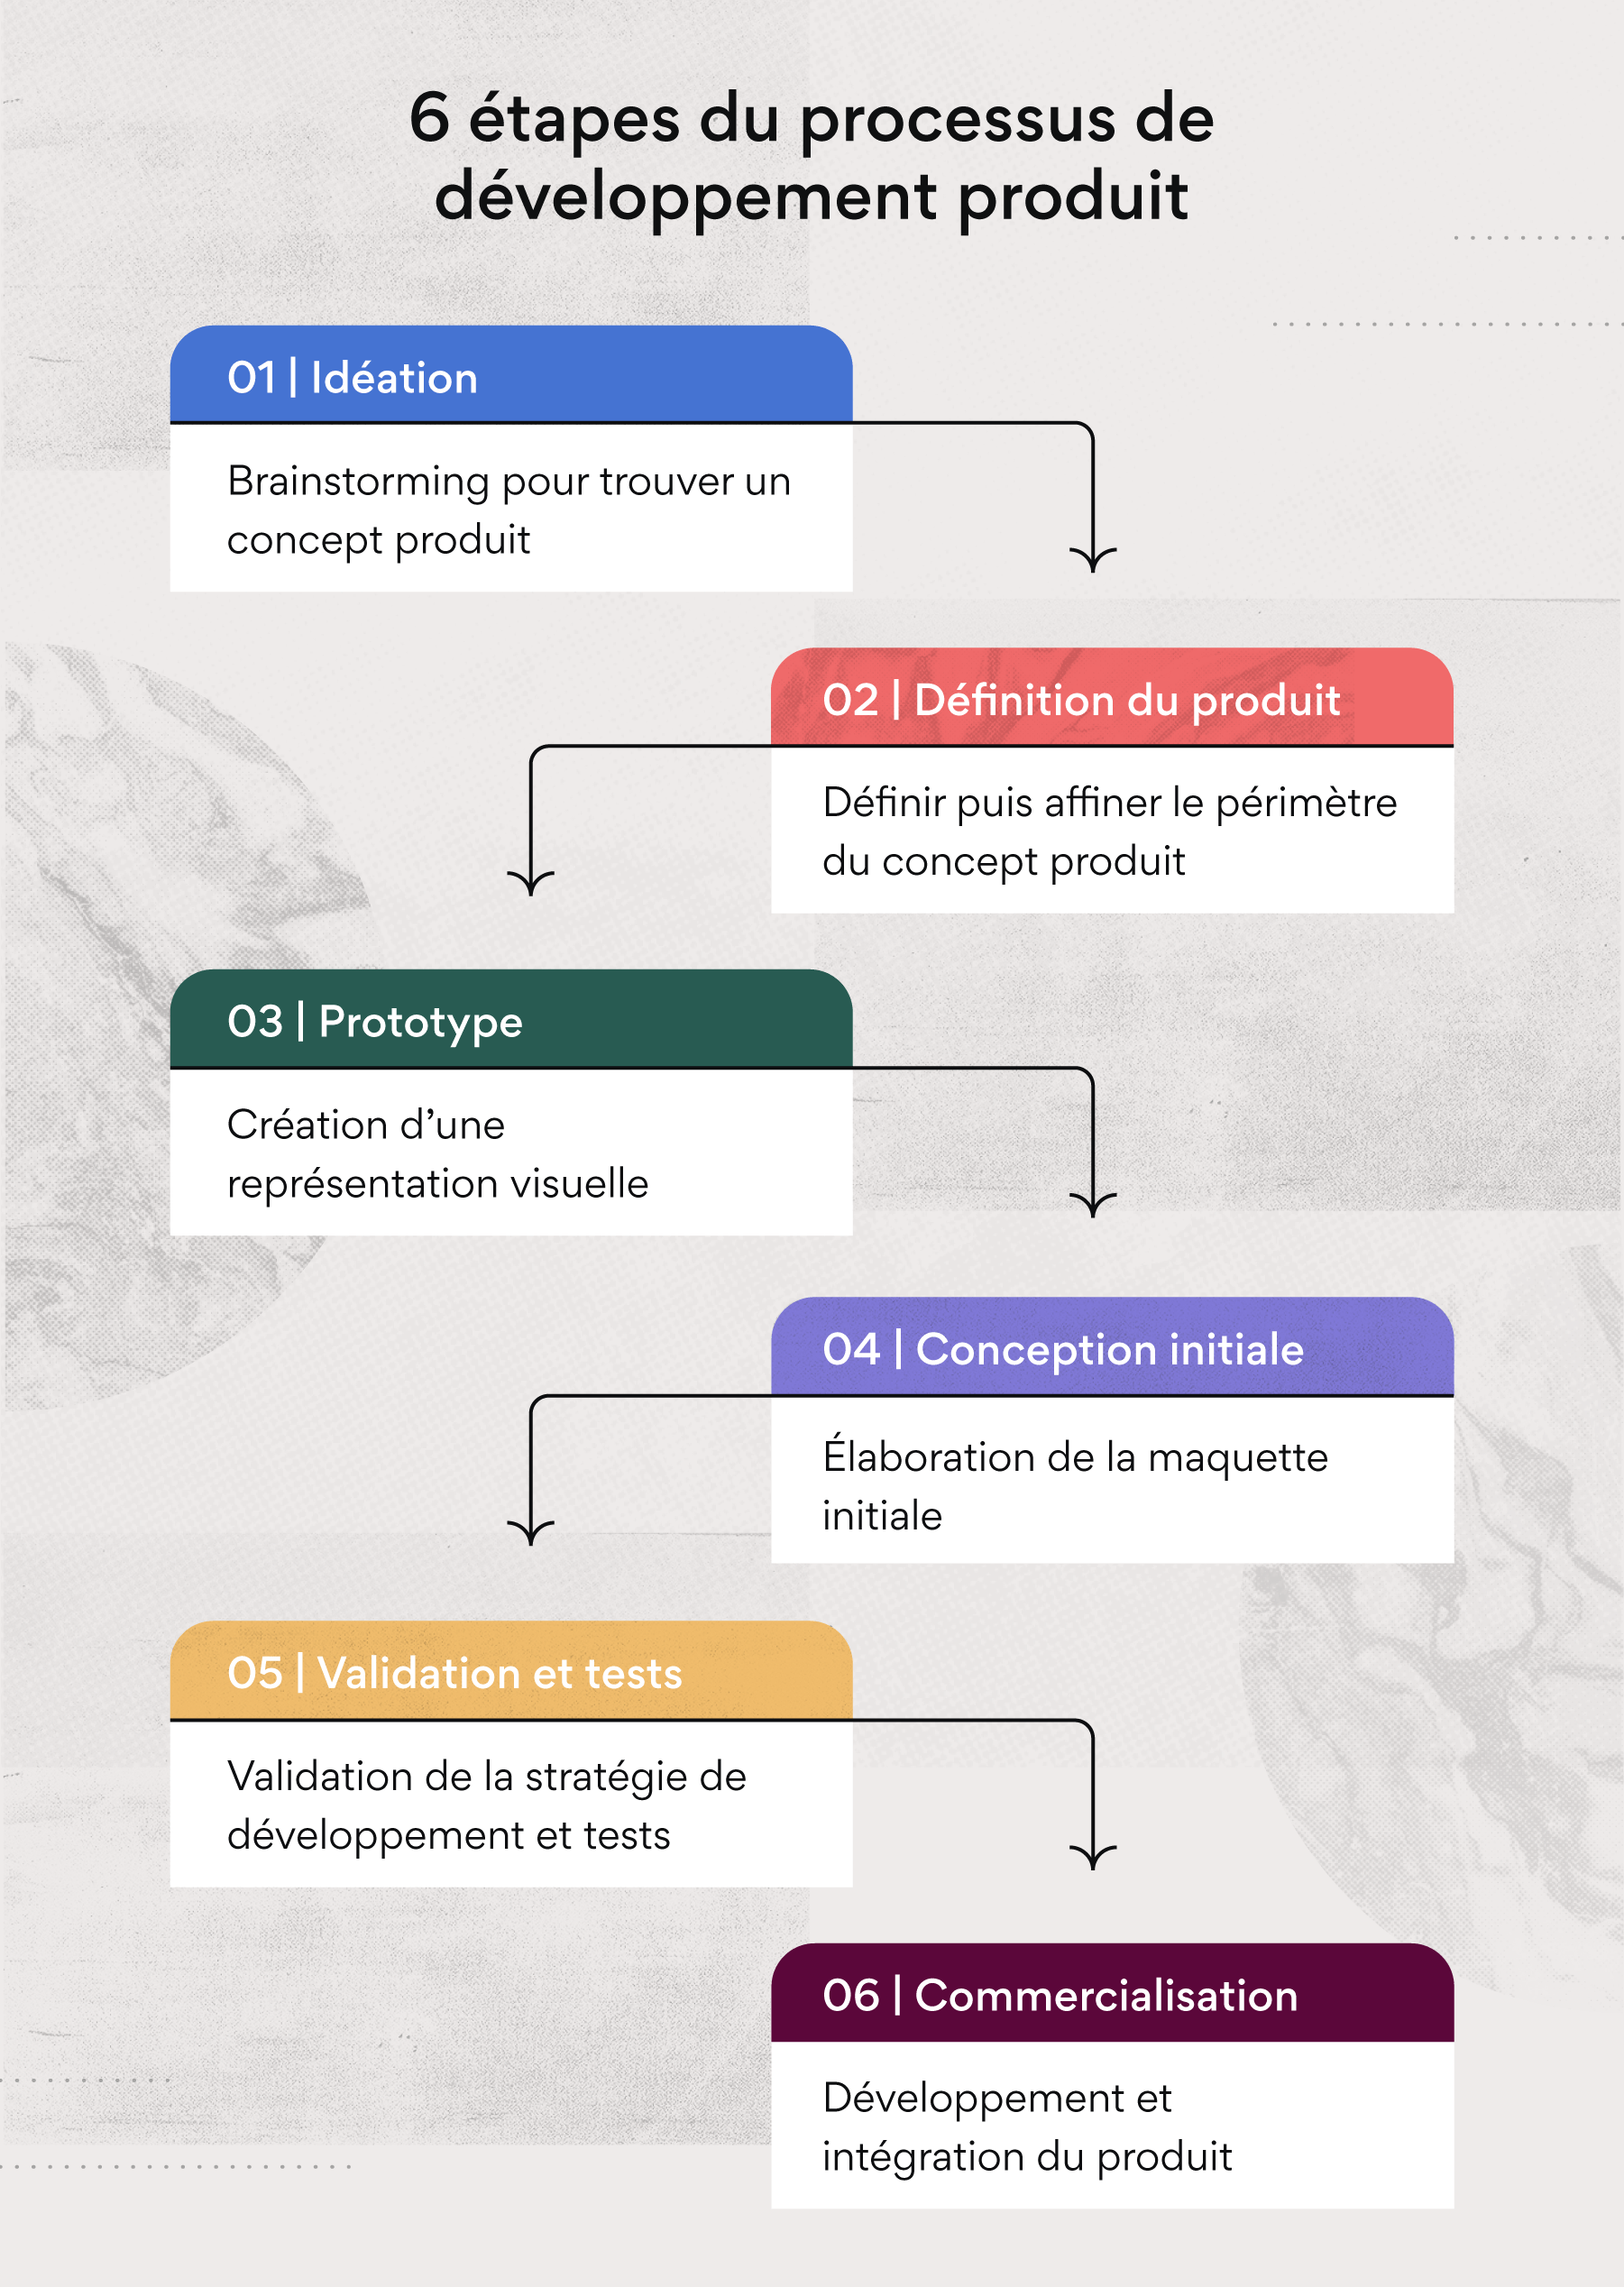 6 étapes du processus de développement produit